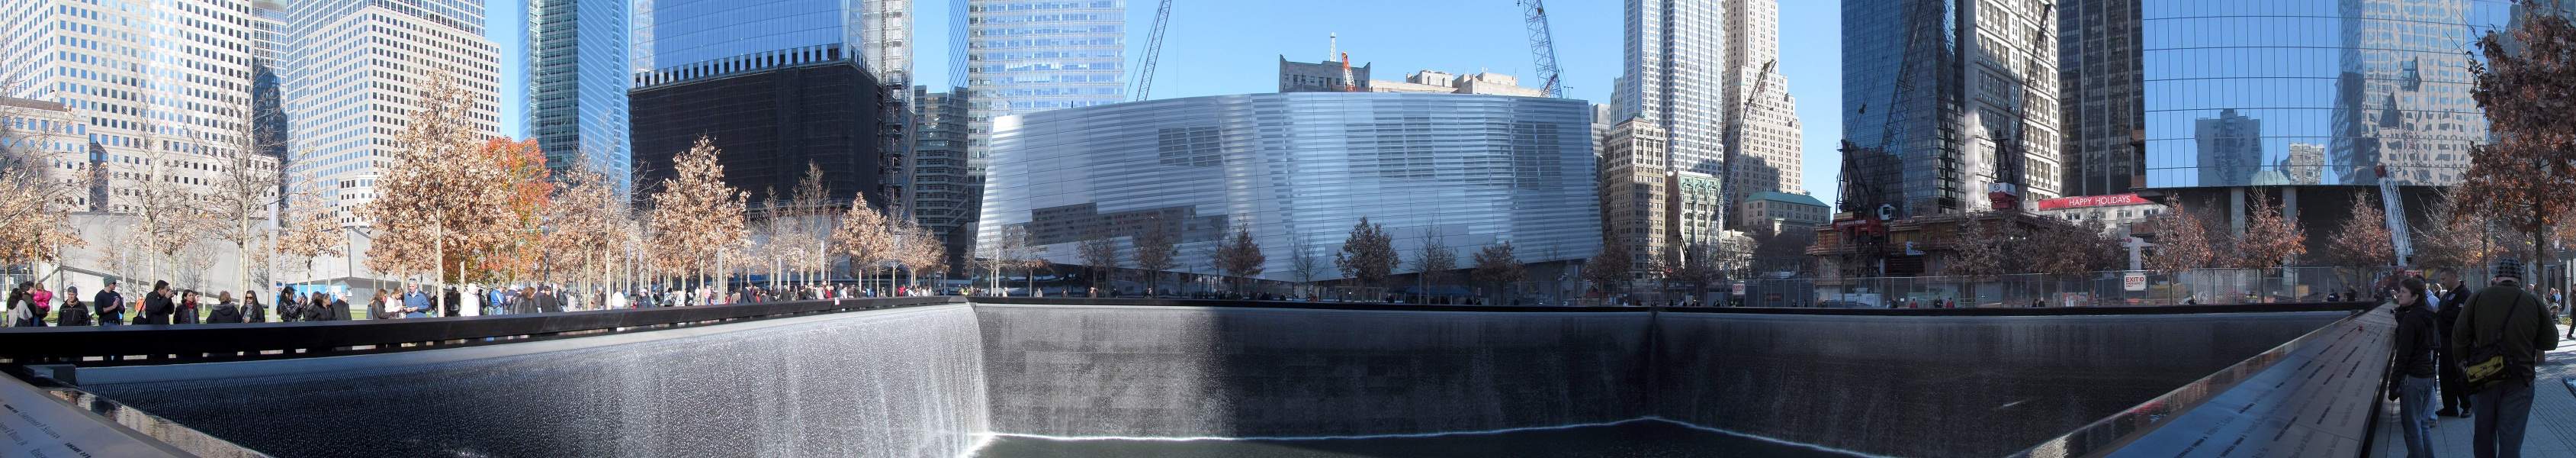 9-11-Memorial Panorama